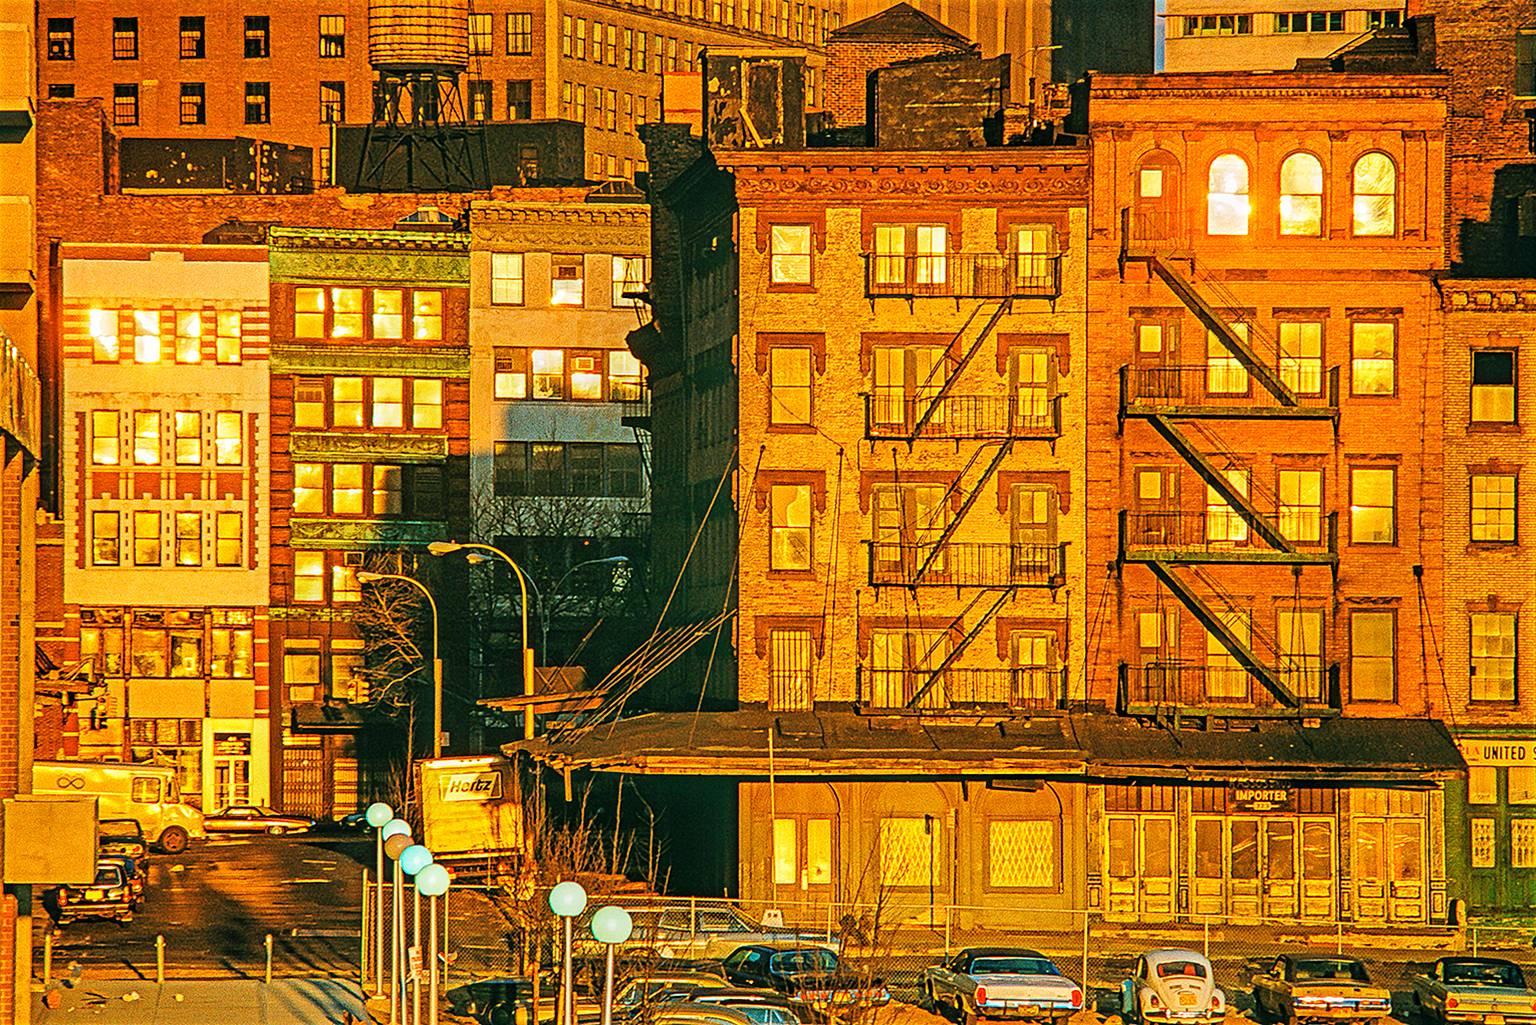 Edward Hoppers Sinn für spätes Licht in Kombination mit der Isolation und Trostlosigkeit New Yorks wird in der Farbfotografie von Mitchell Funk dargestellt. Goldenes Licht taucht das New York der 70er Jahre in einen magischen Glanz und lässt alte